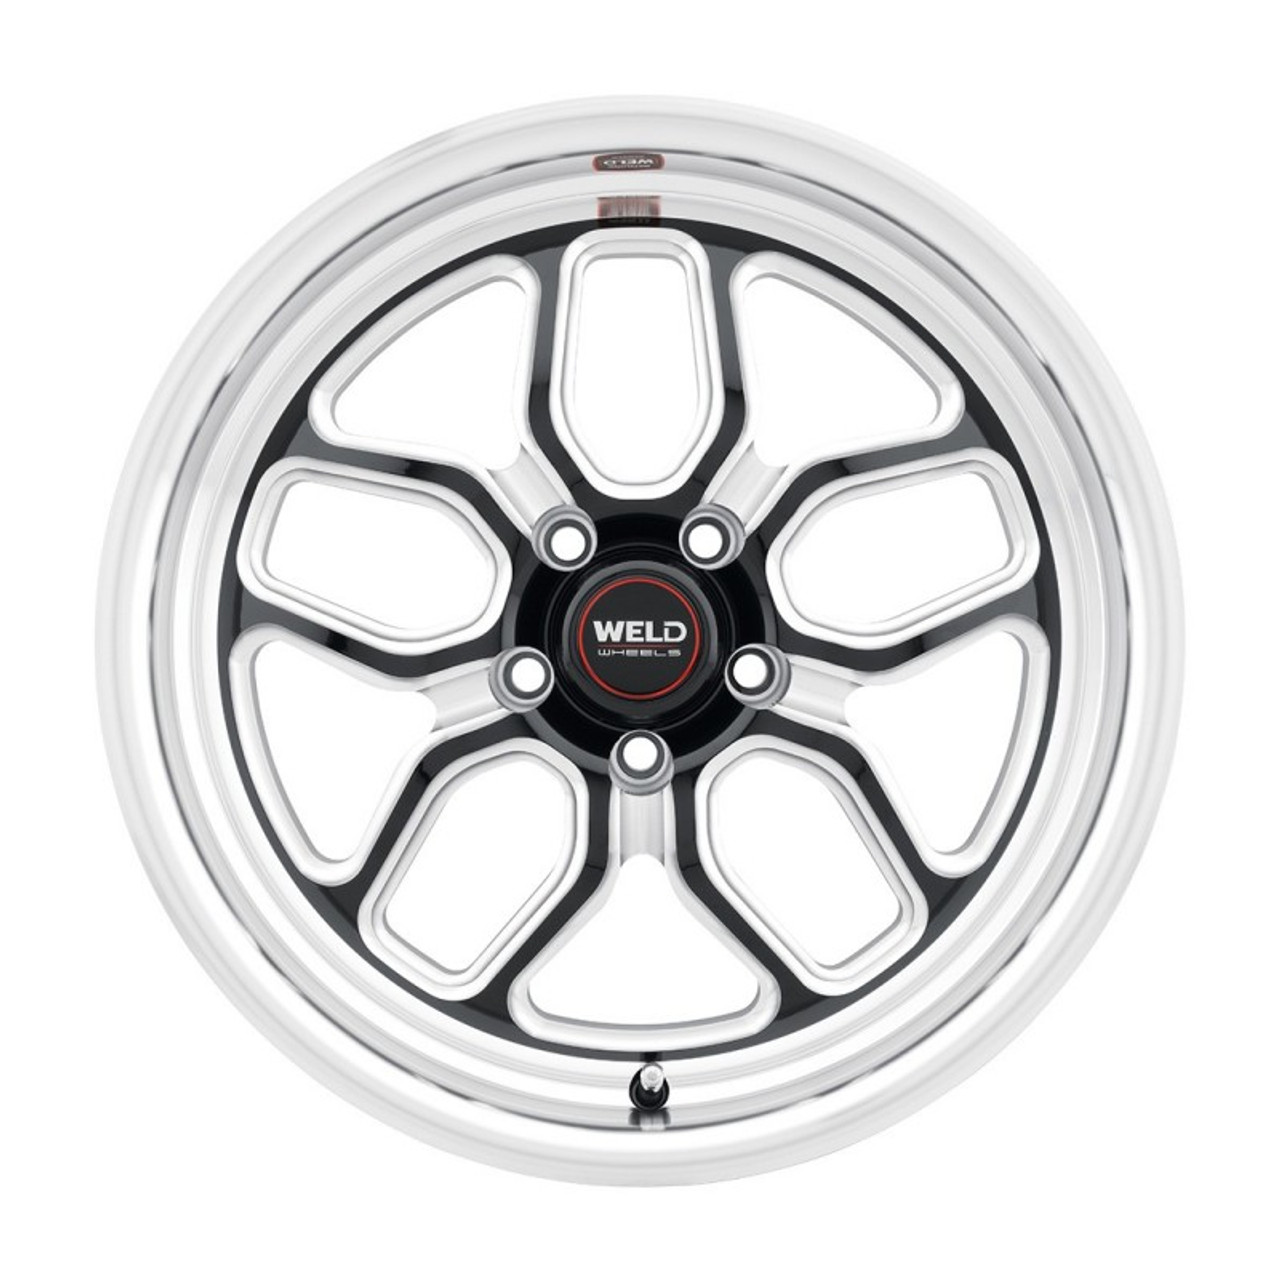 Weld Laguna 17x5" Drag Wheel - Gloss Black (Weld S1527C067N21)